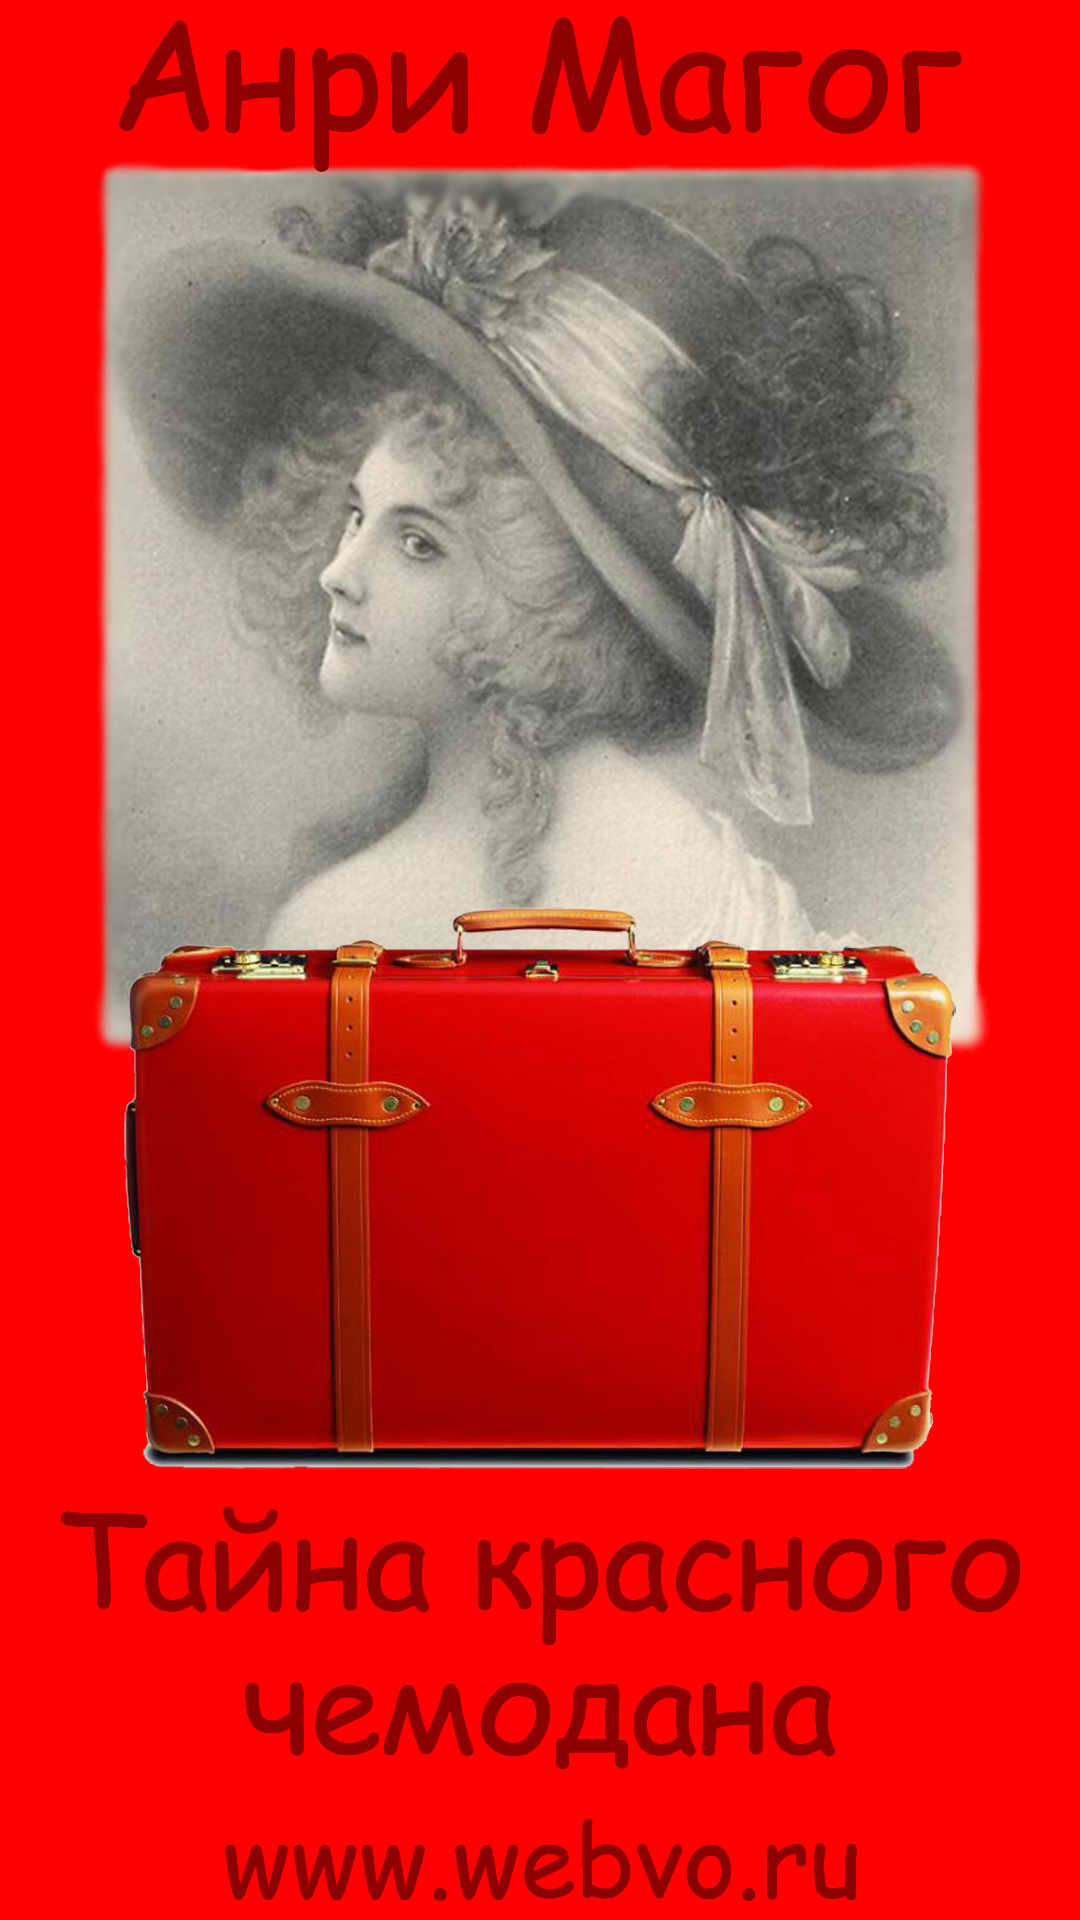 Анри Магог, Тайна красного чемодана, обложка бесплатной электронной книги